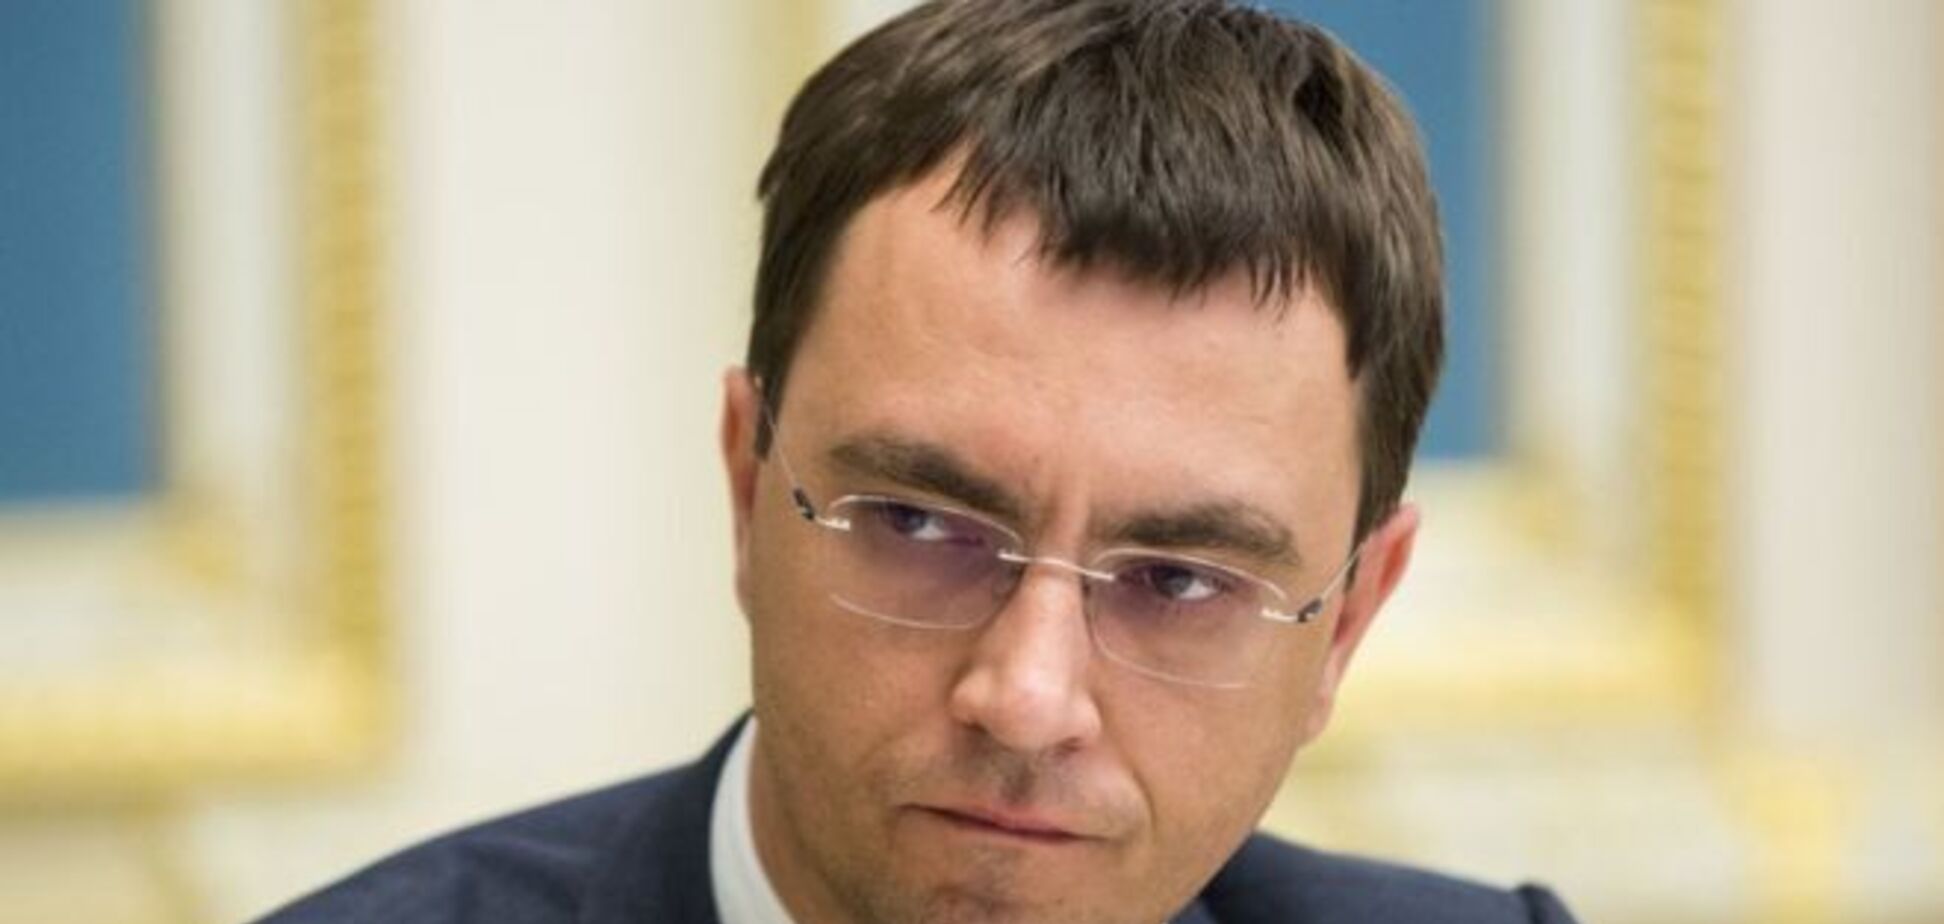 'Не стыдно?' Министр обвинил Зеленского в 'цирке на госуровне'